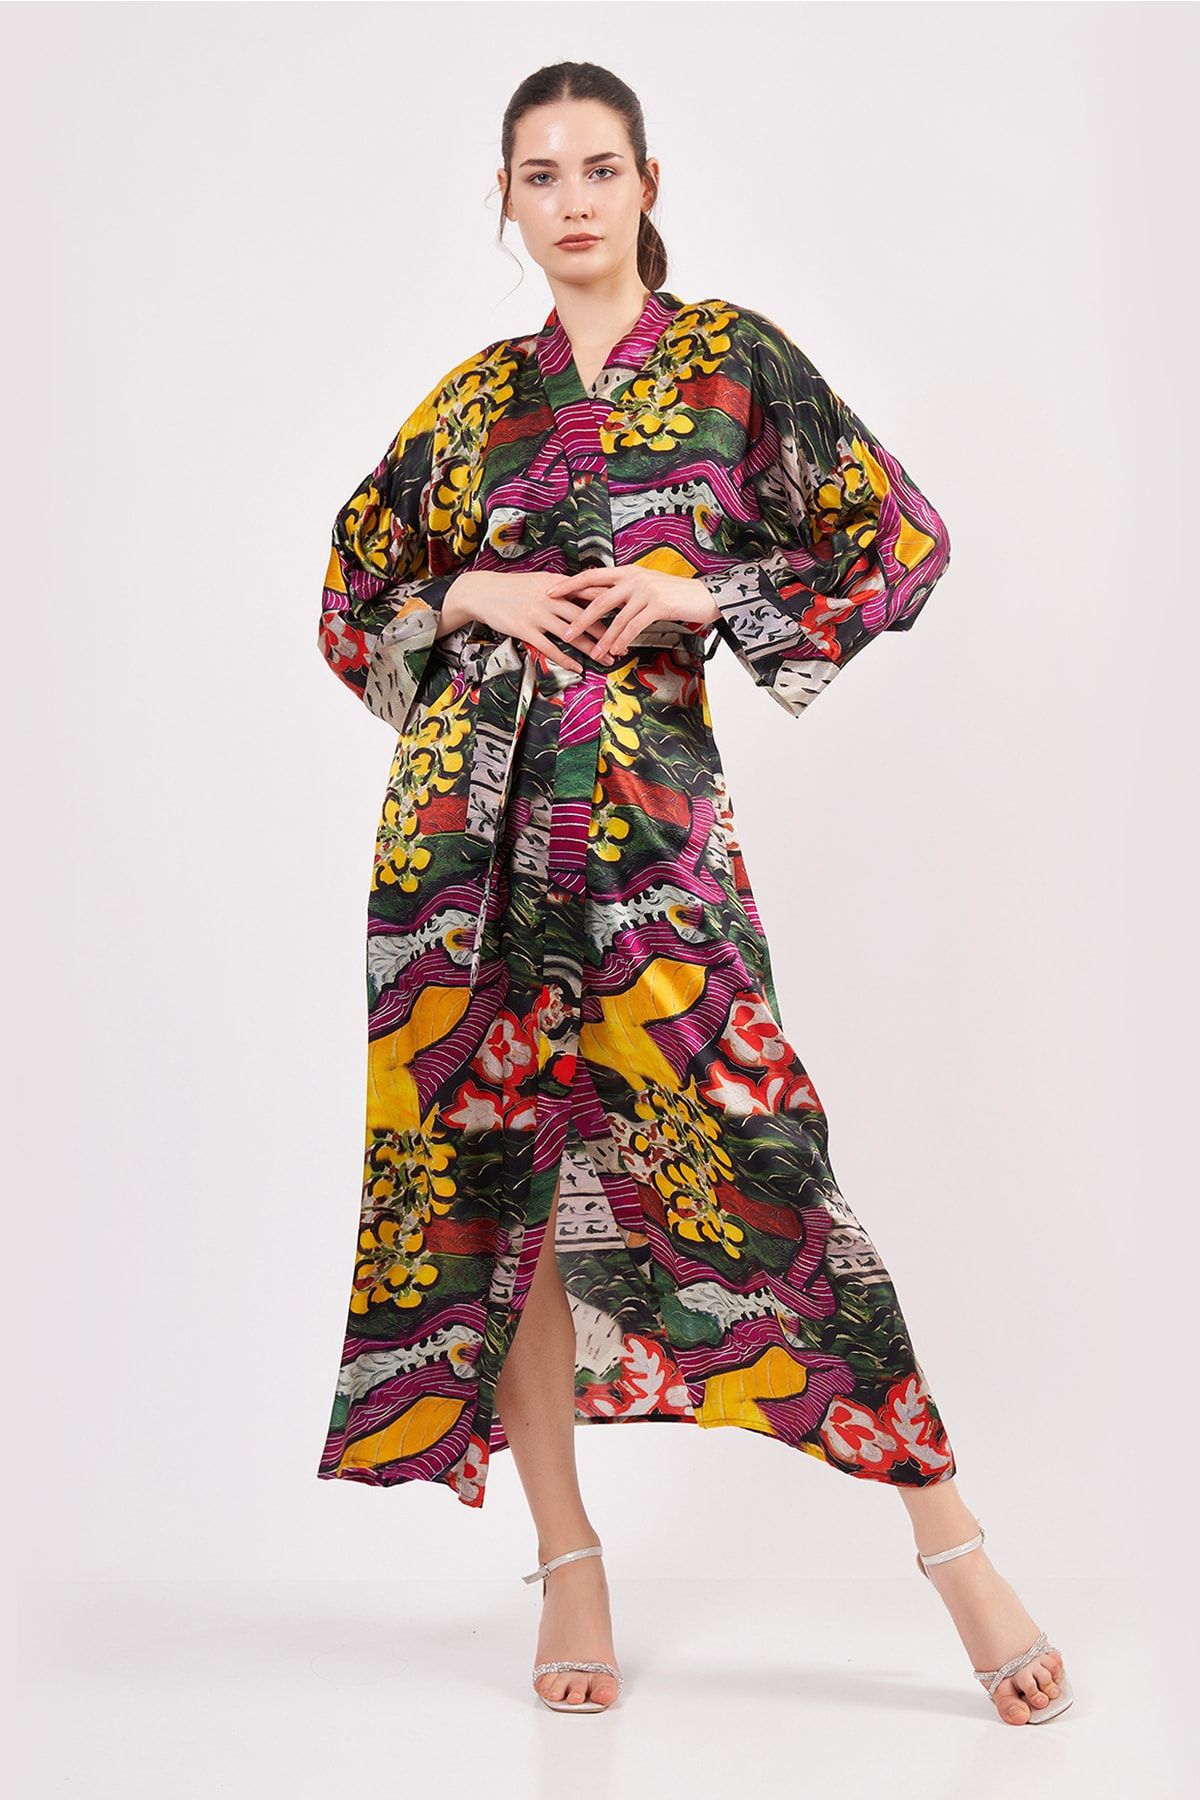 Nomads Felt İpek Kimono Kaftan | Henri Matisse Purple and Dress | Nomads Felt